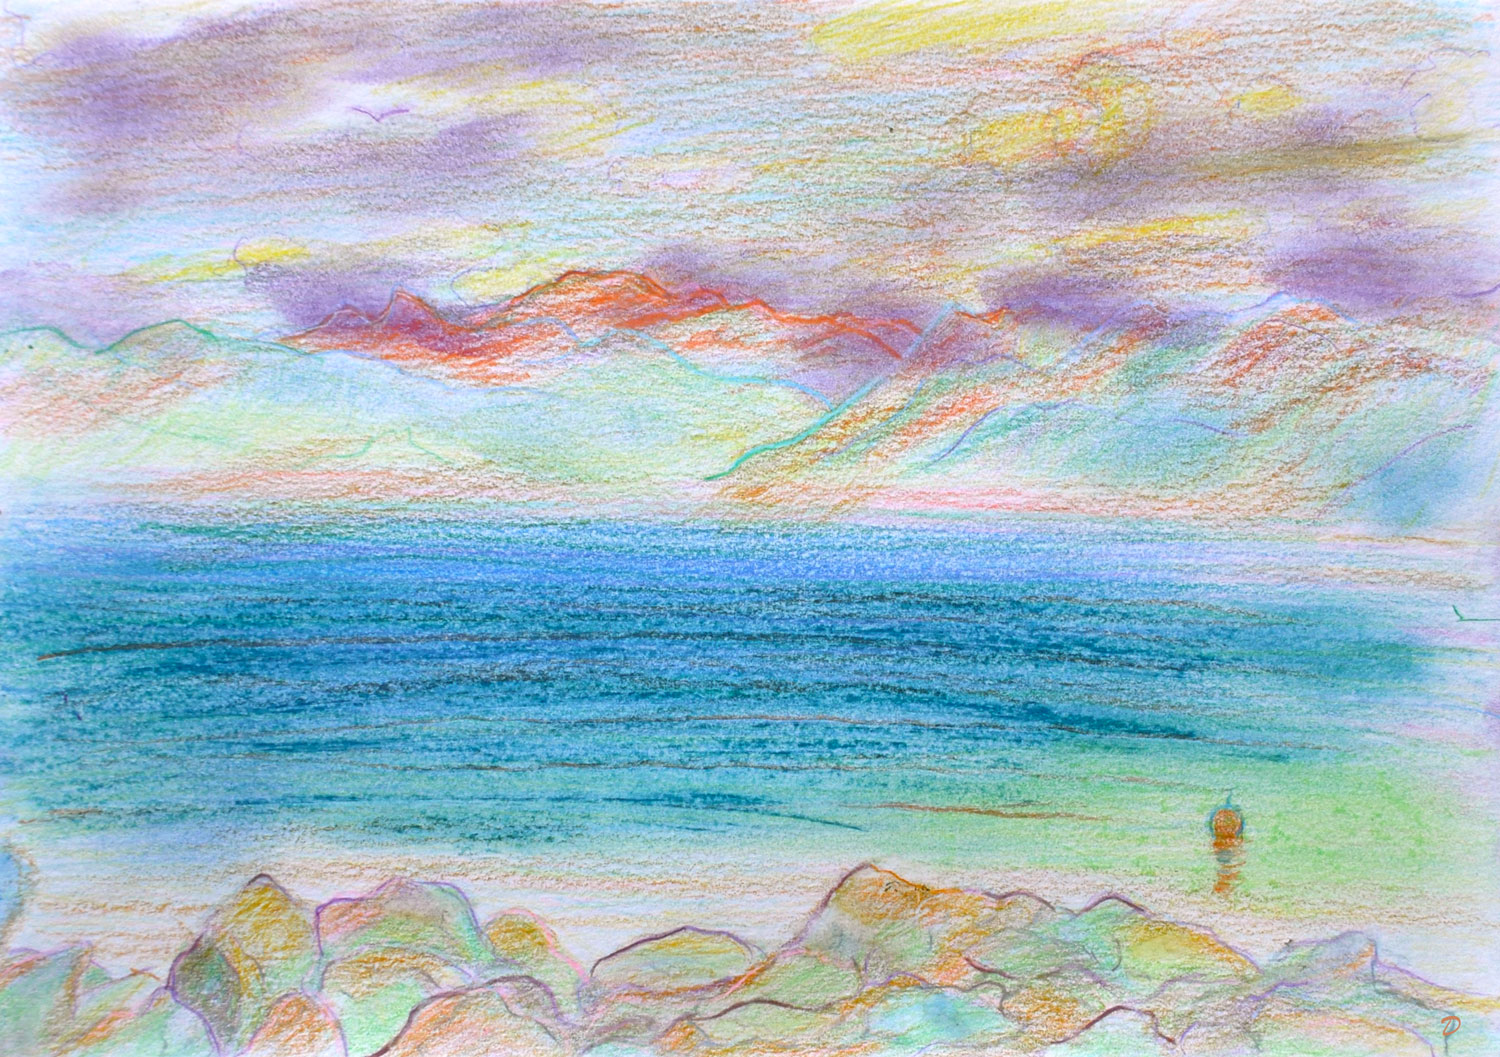 Lac Léman, St Prex, 42. Crayon de couleur et pastel sur papier, 21x29, 2022